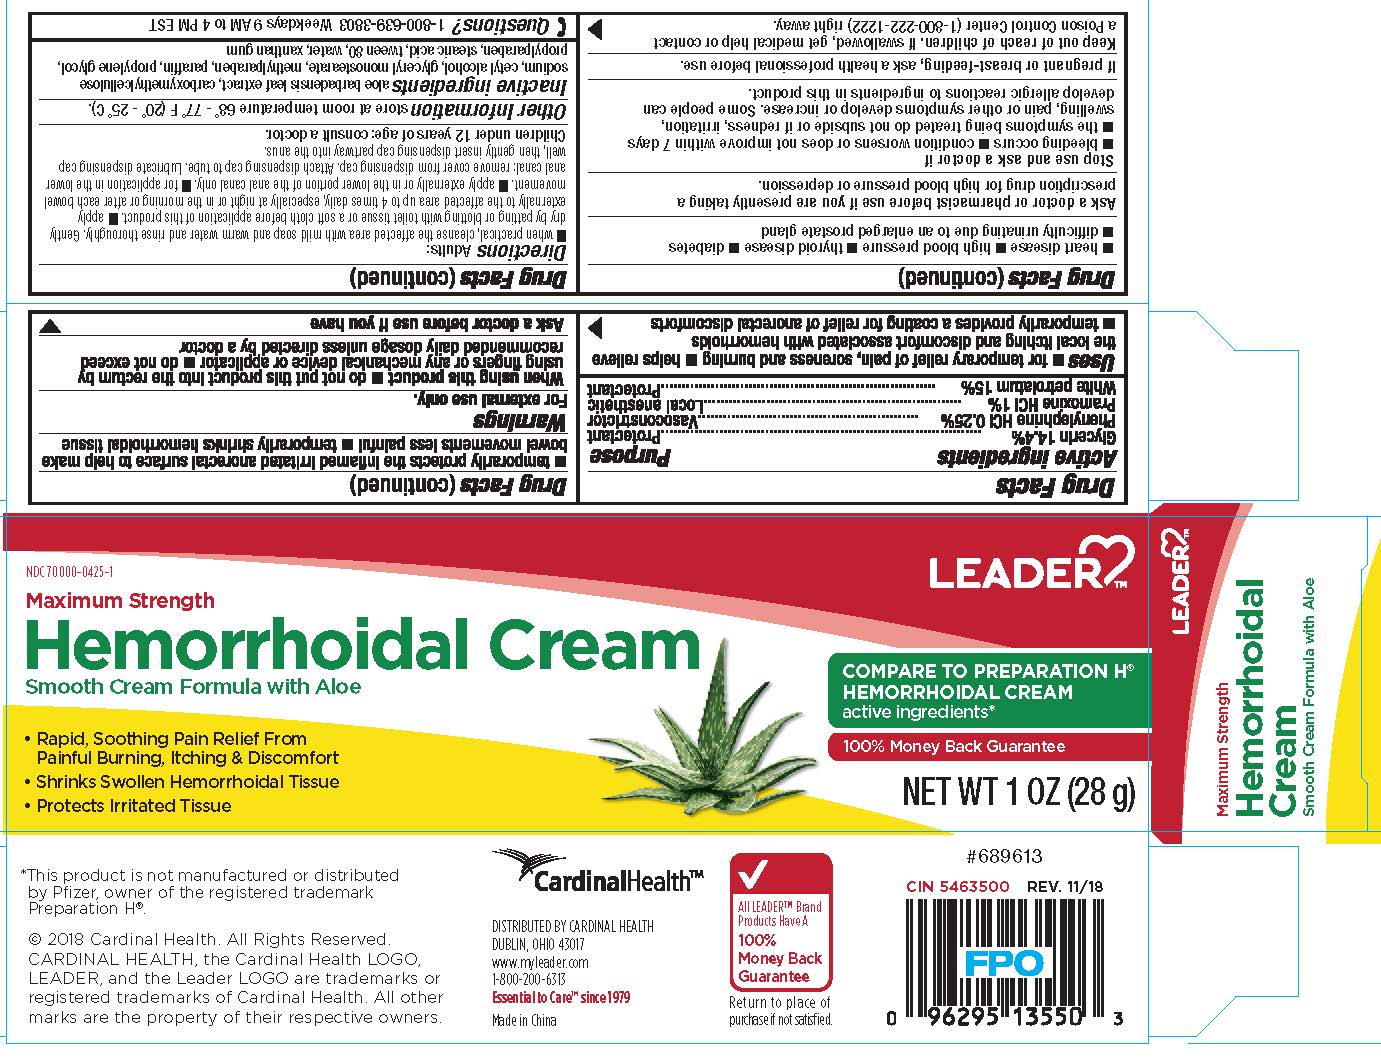 Hemorrhoidal Cream Package